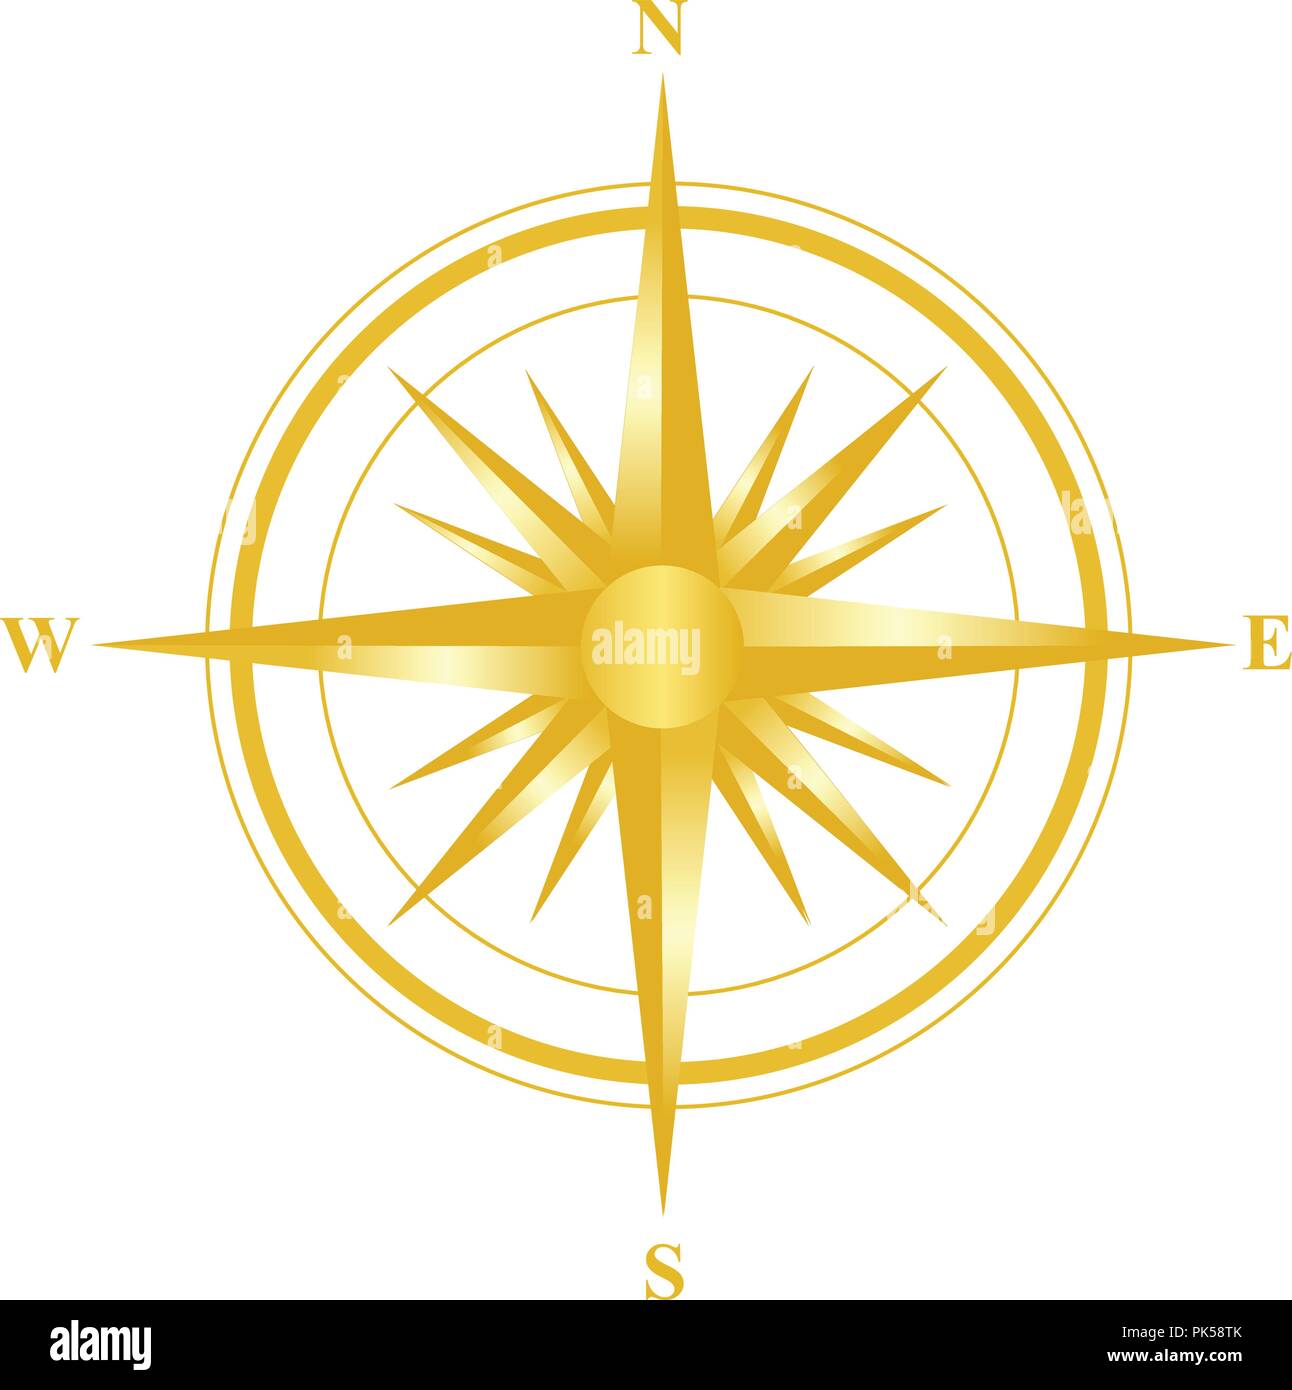 Ilustración de un compás de oro con todas las direcciones norte sur oriente y occidente aislado sobre fondo blanco. Ilustración del Vector